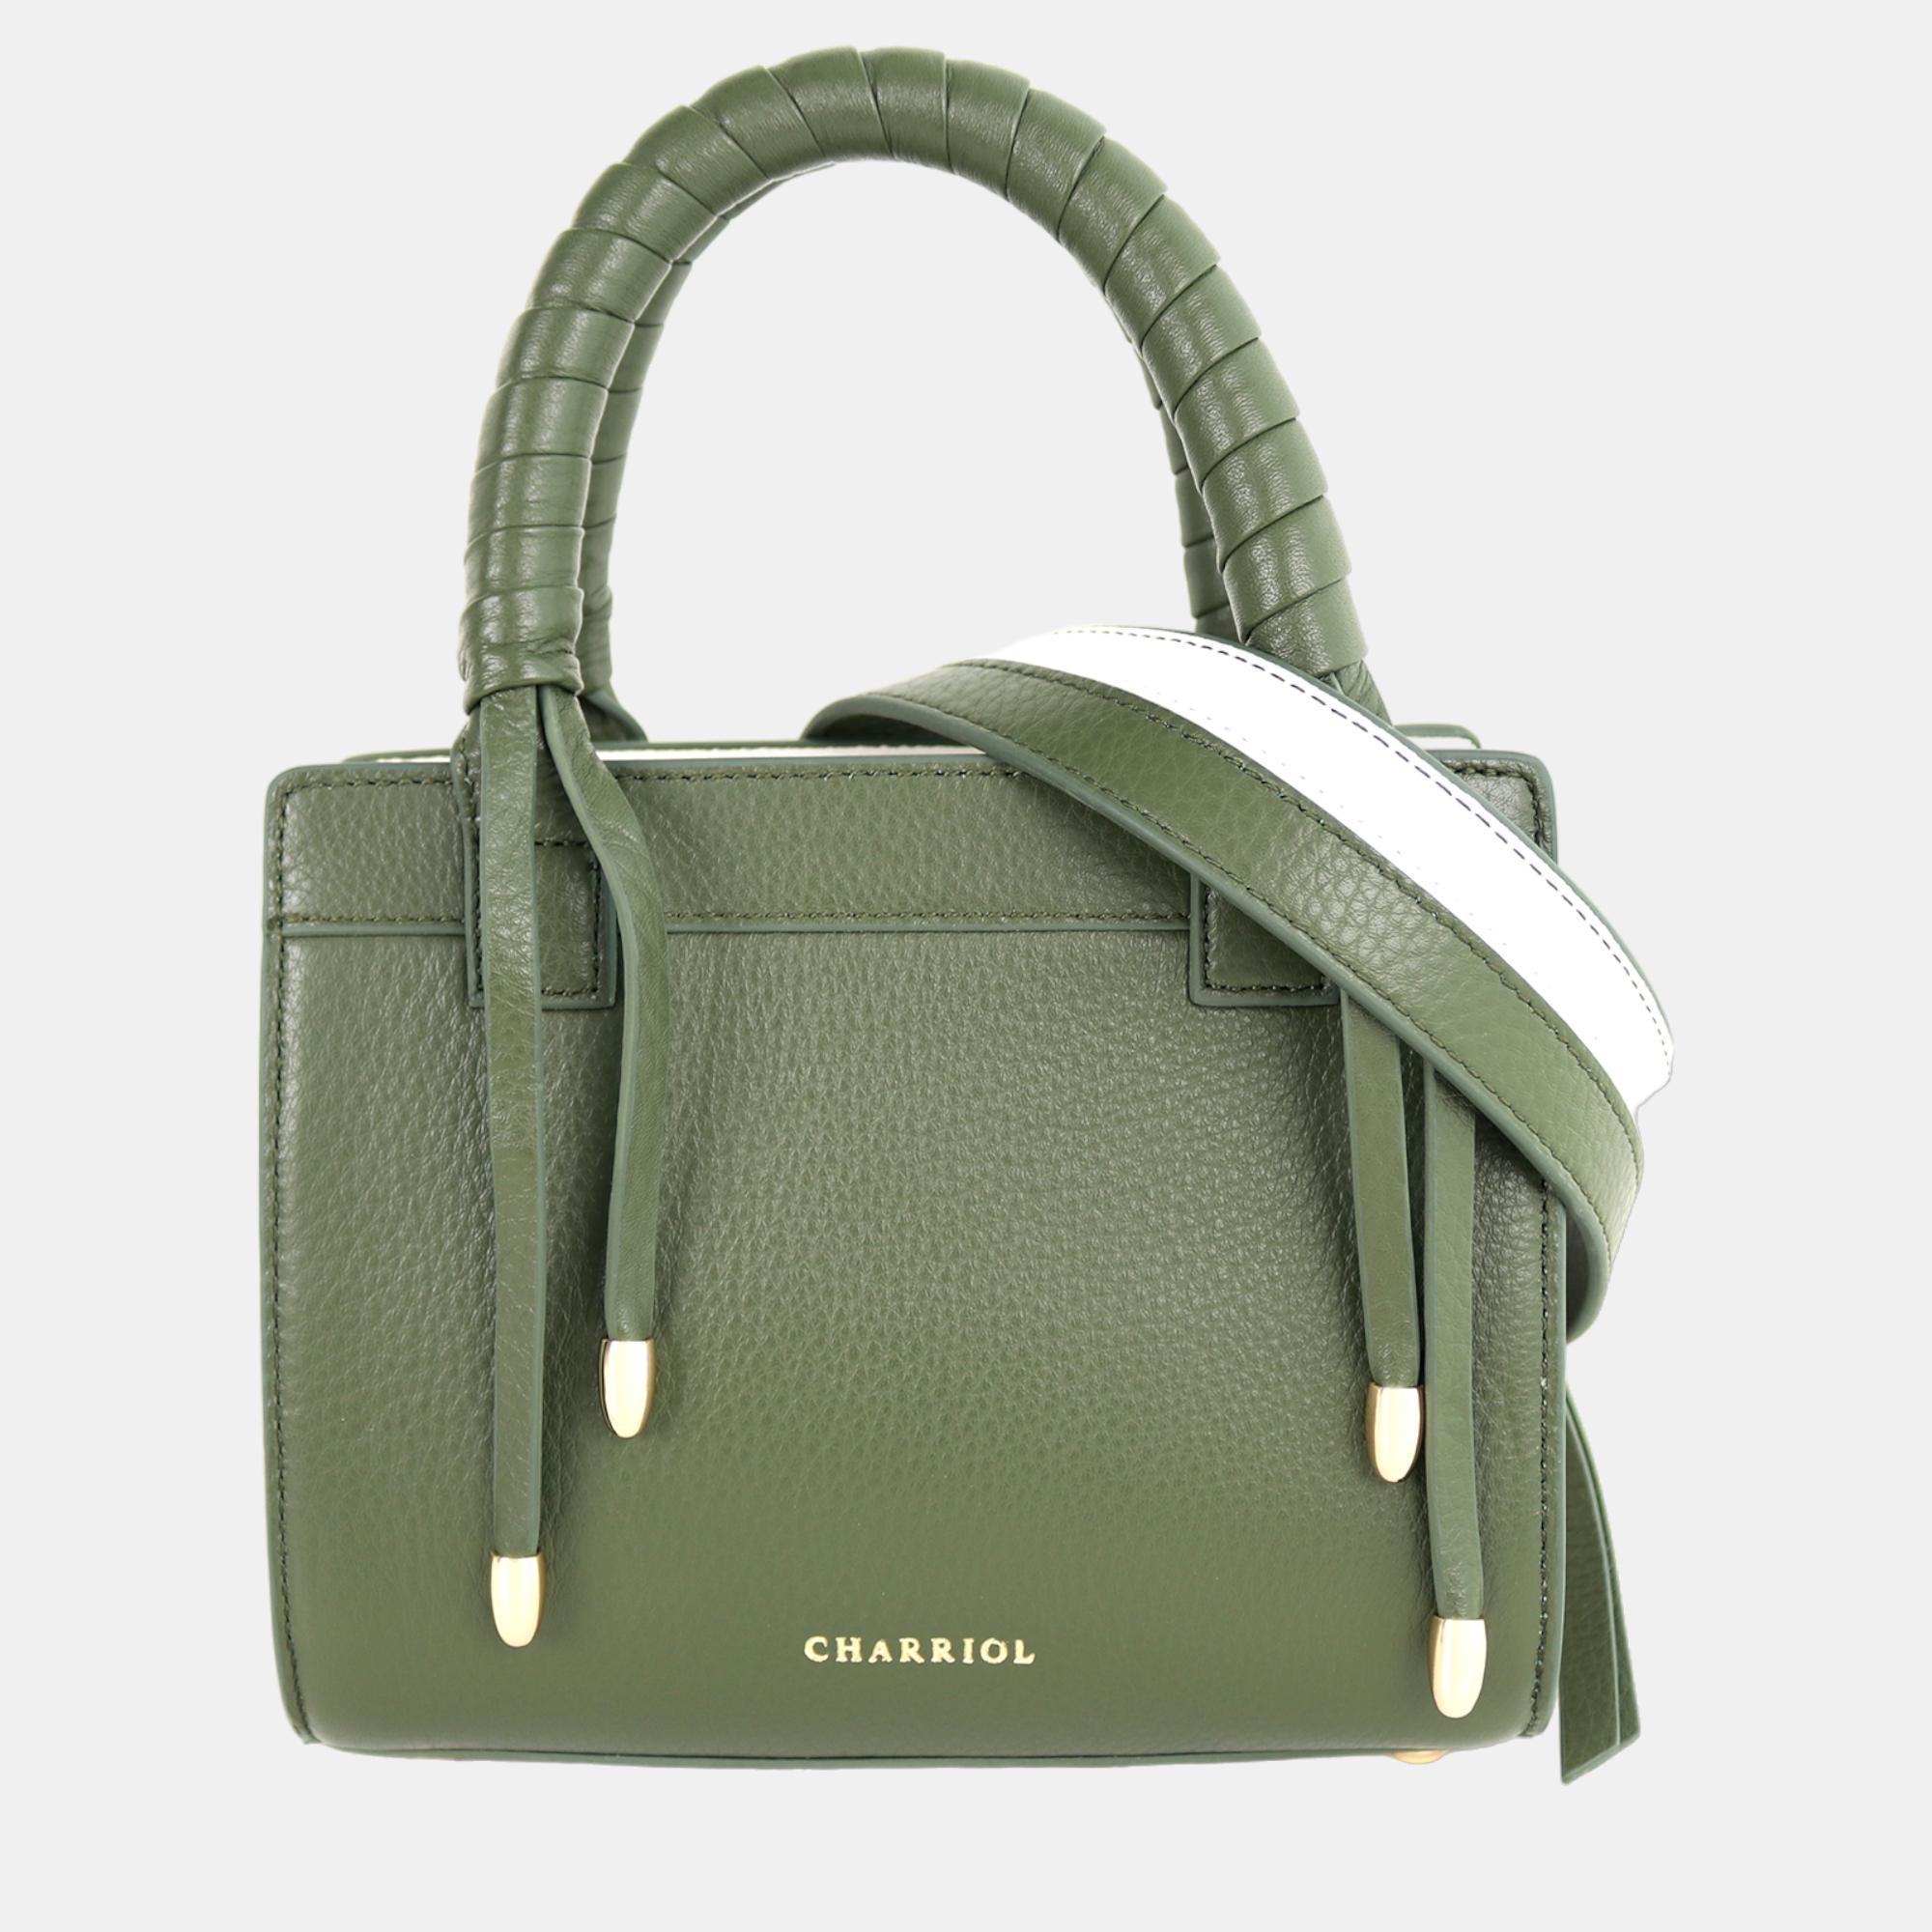 Charriol military green/off white leather forever handbag